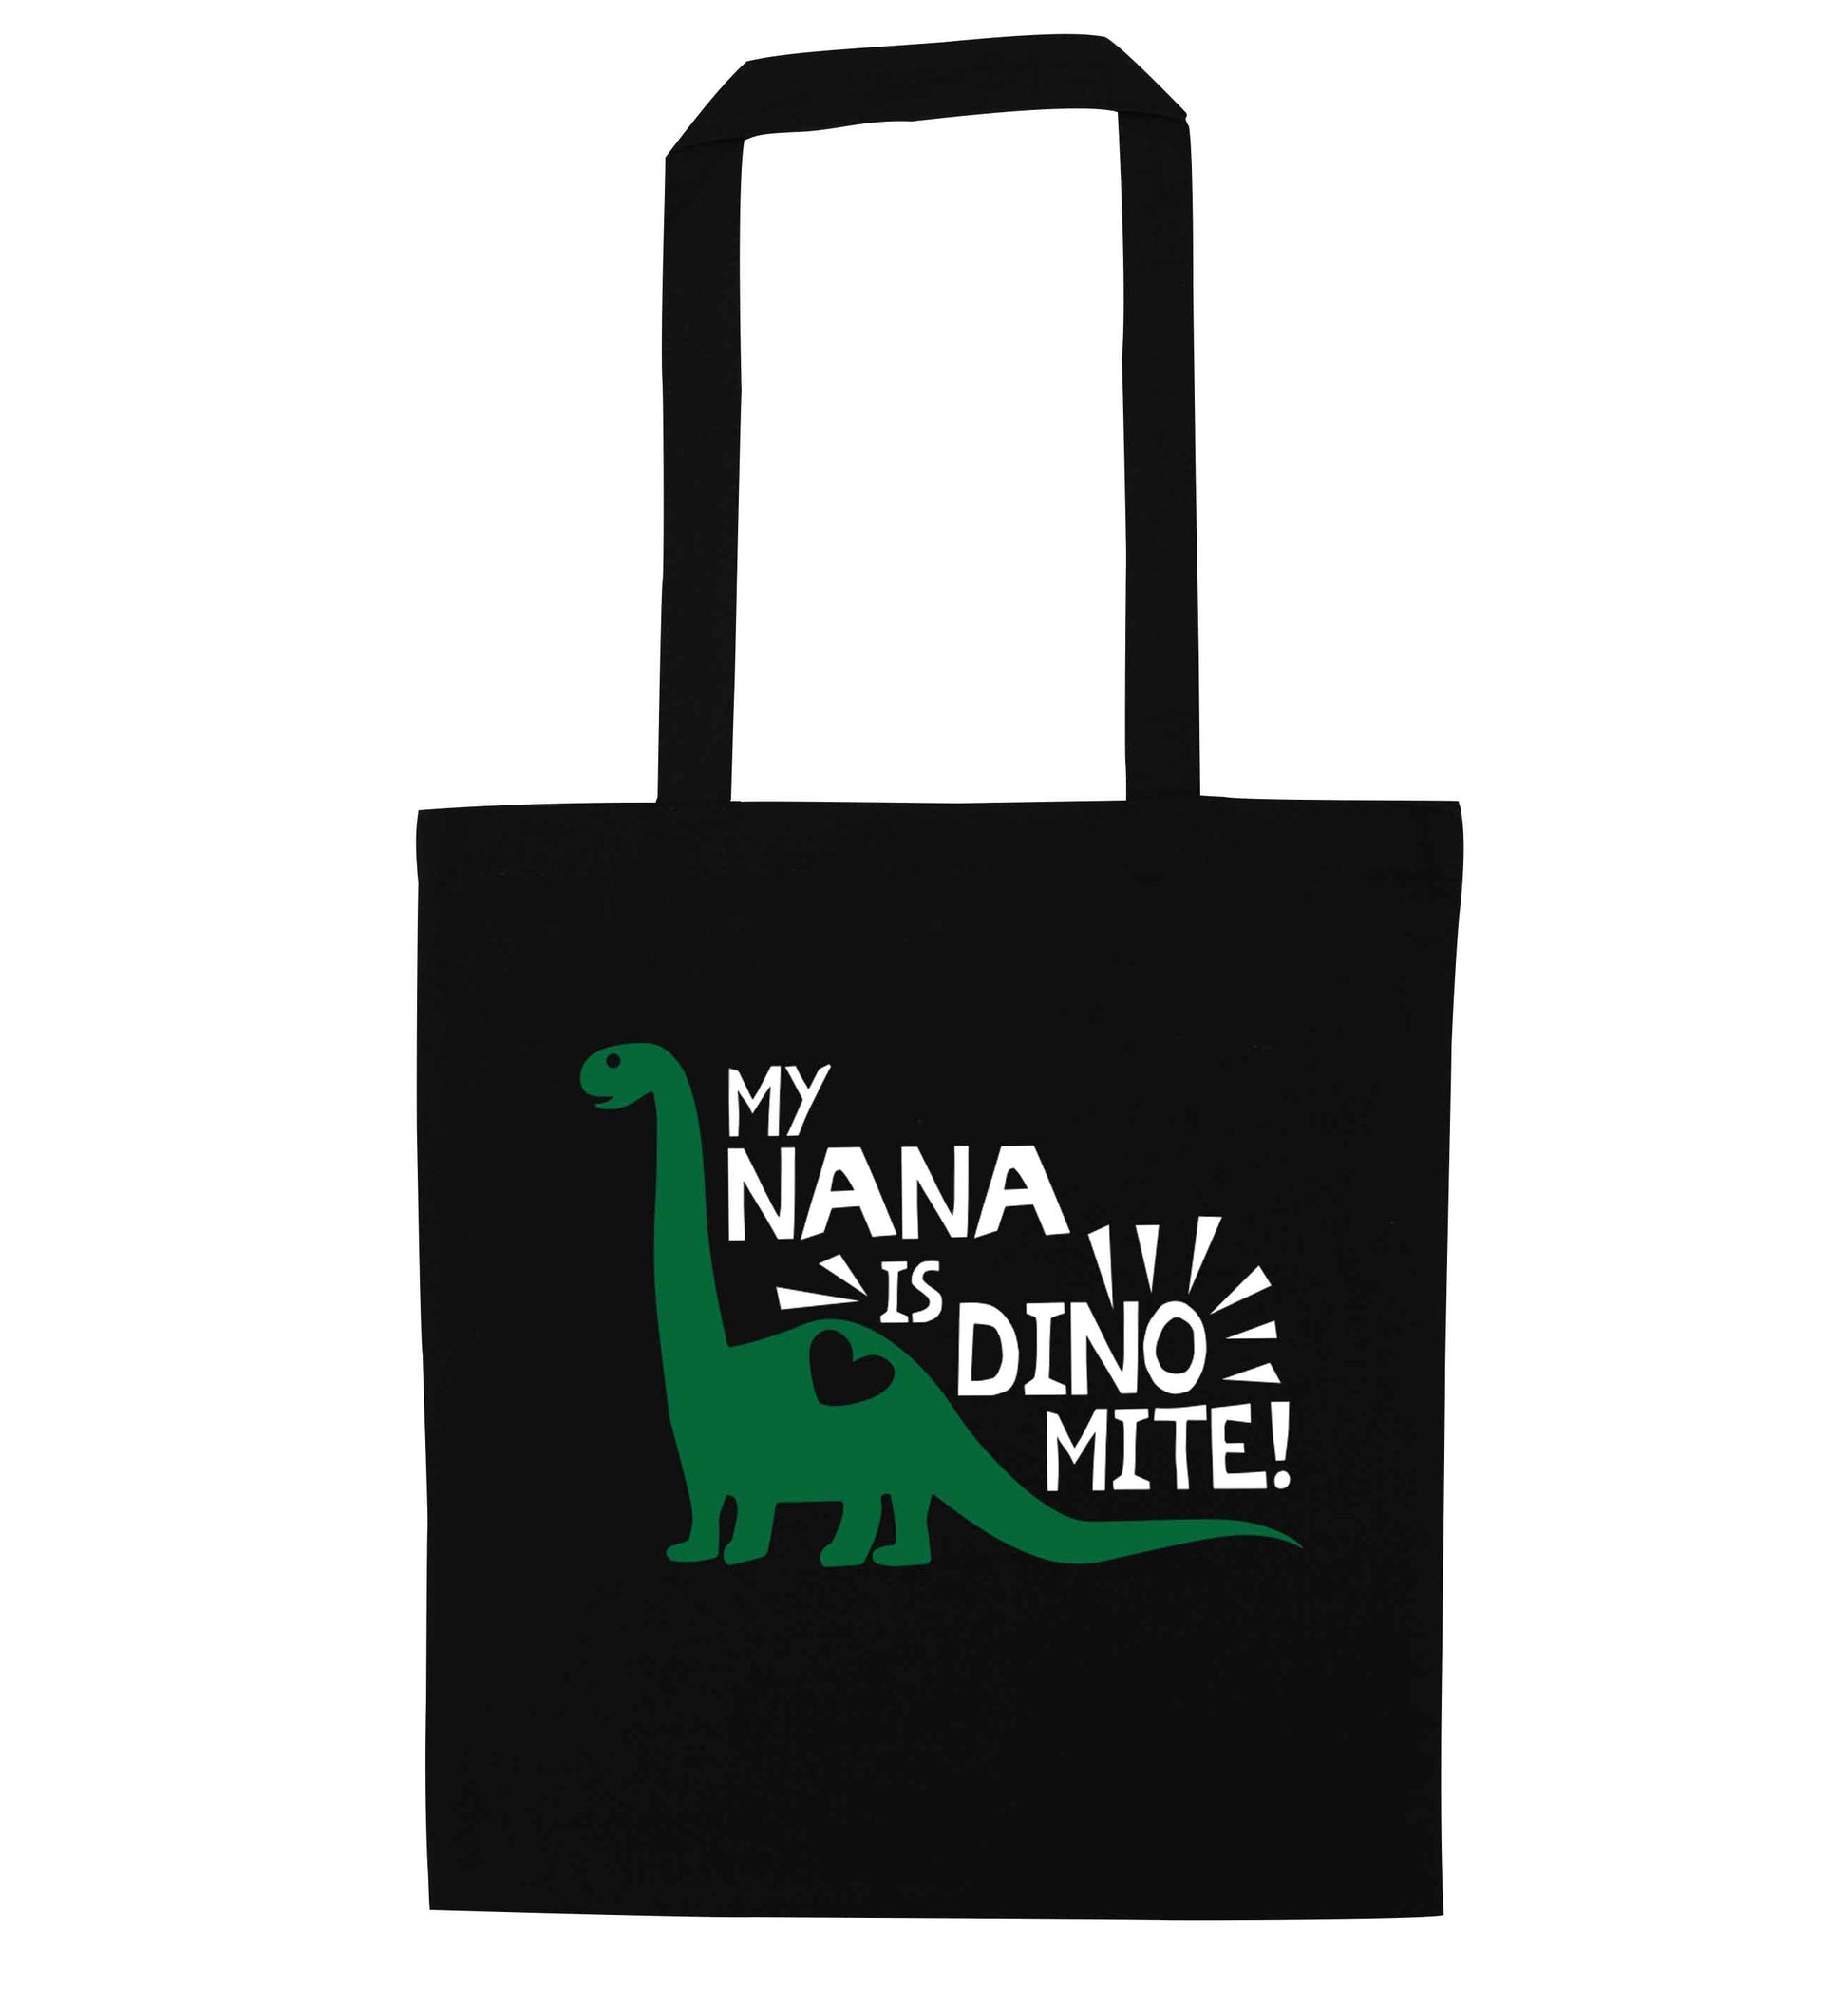 My nana is dinomite! black tote bag